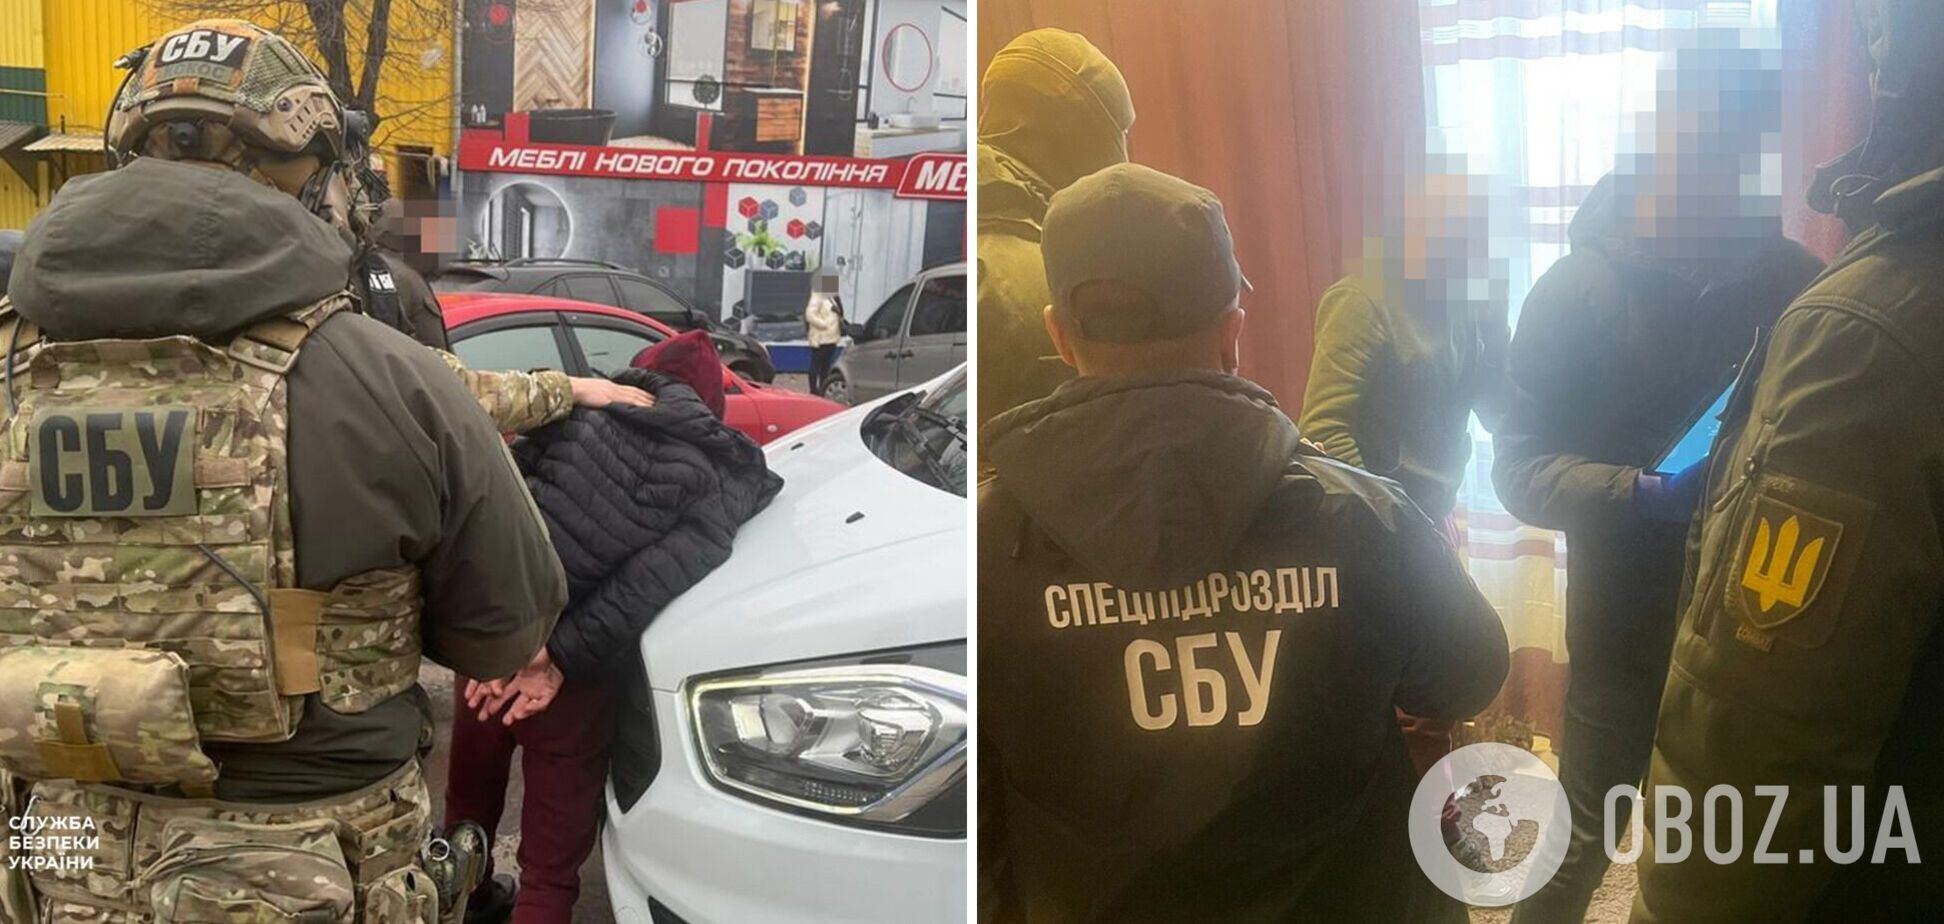 СБУ разоблачила на Винниччине предателя, который вербовал украинских уголовников в ряды ЧВК 'Вагнер'. Фото